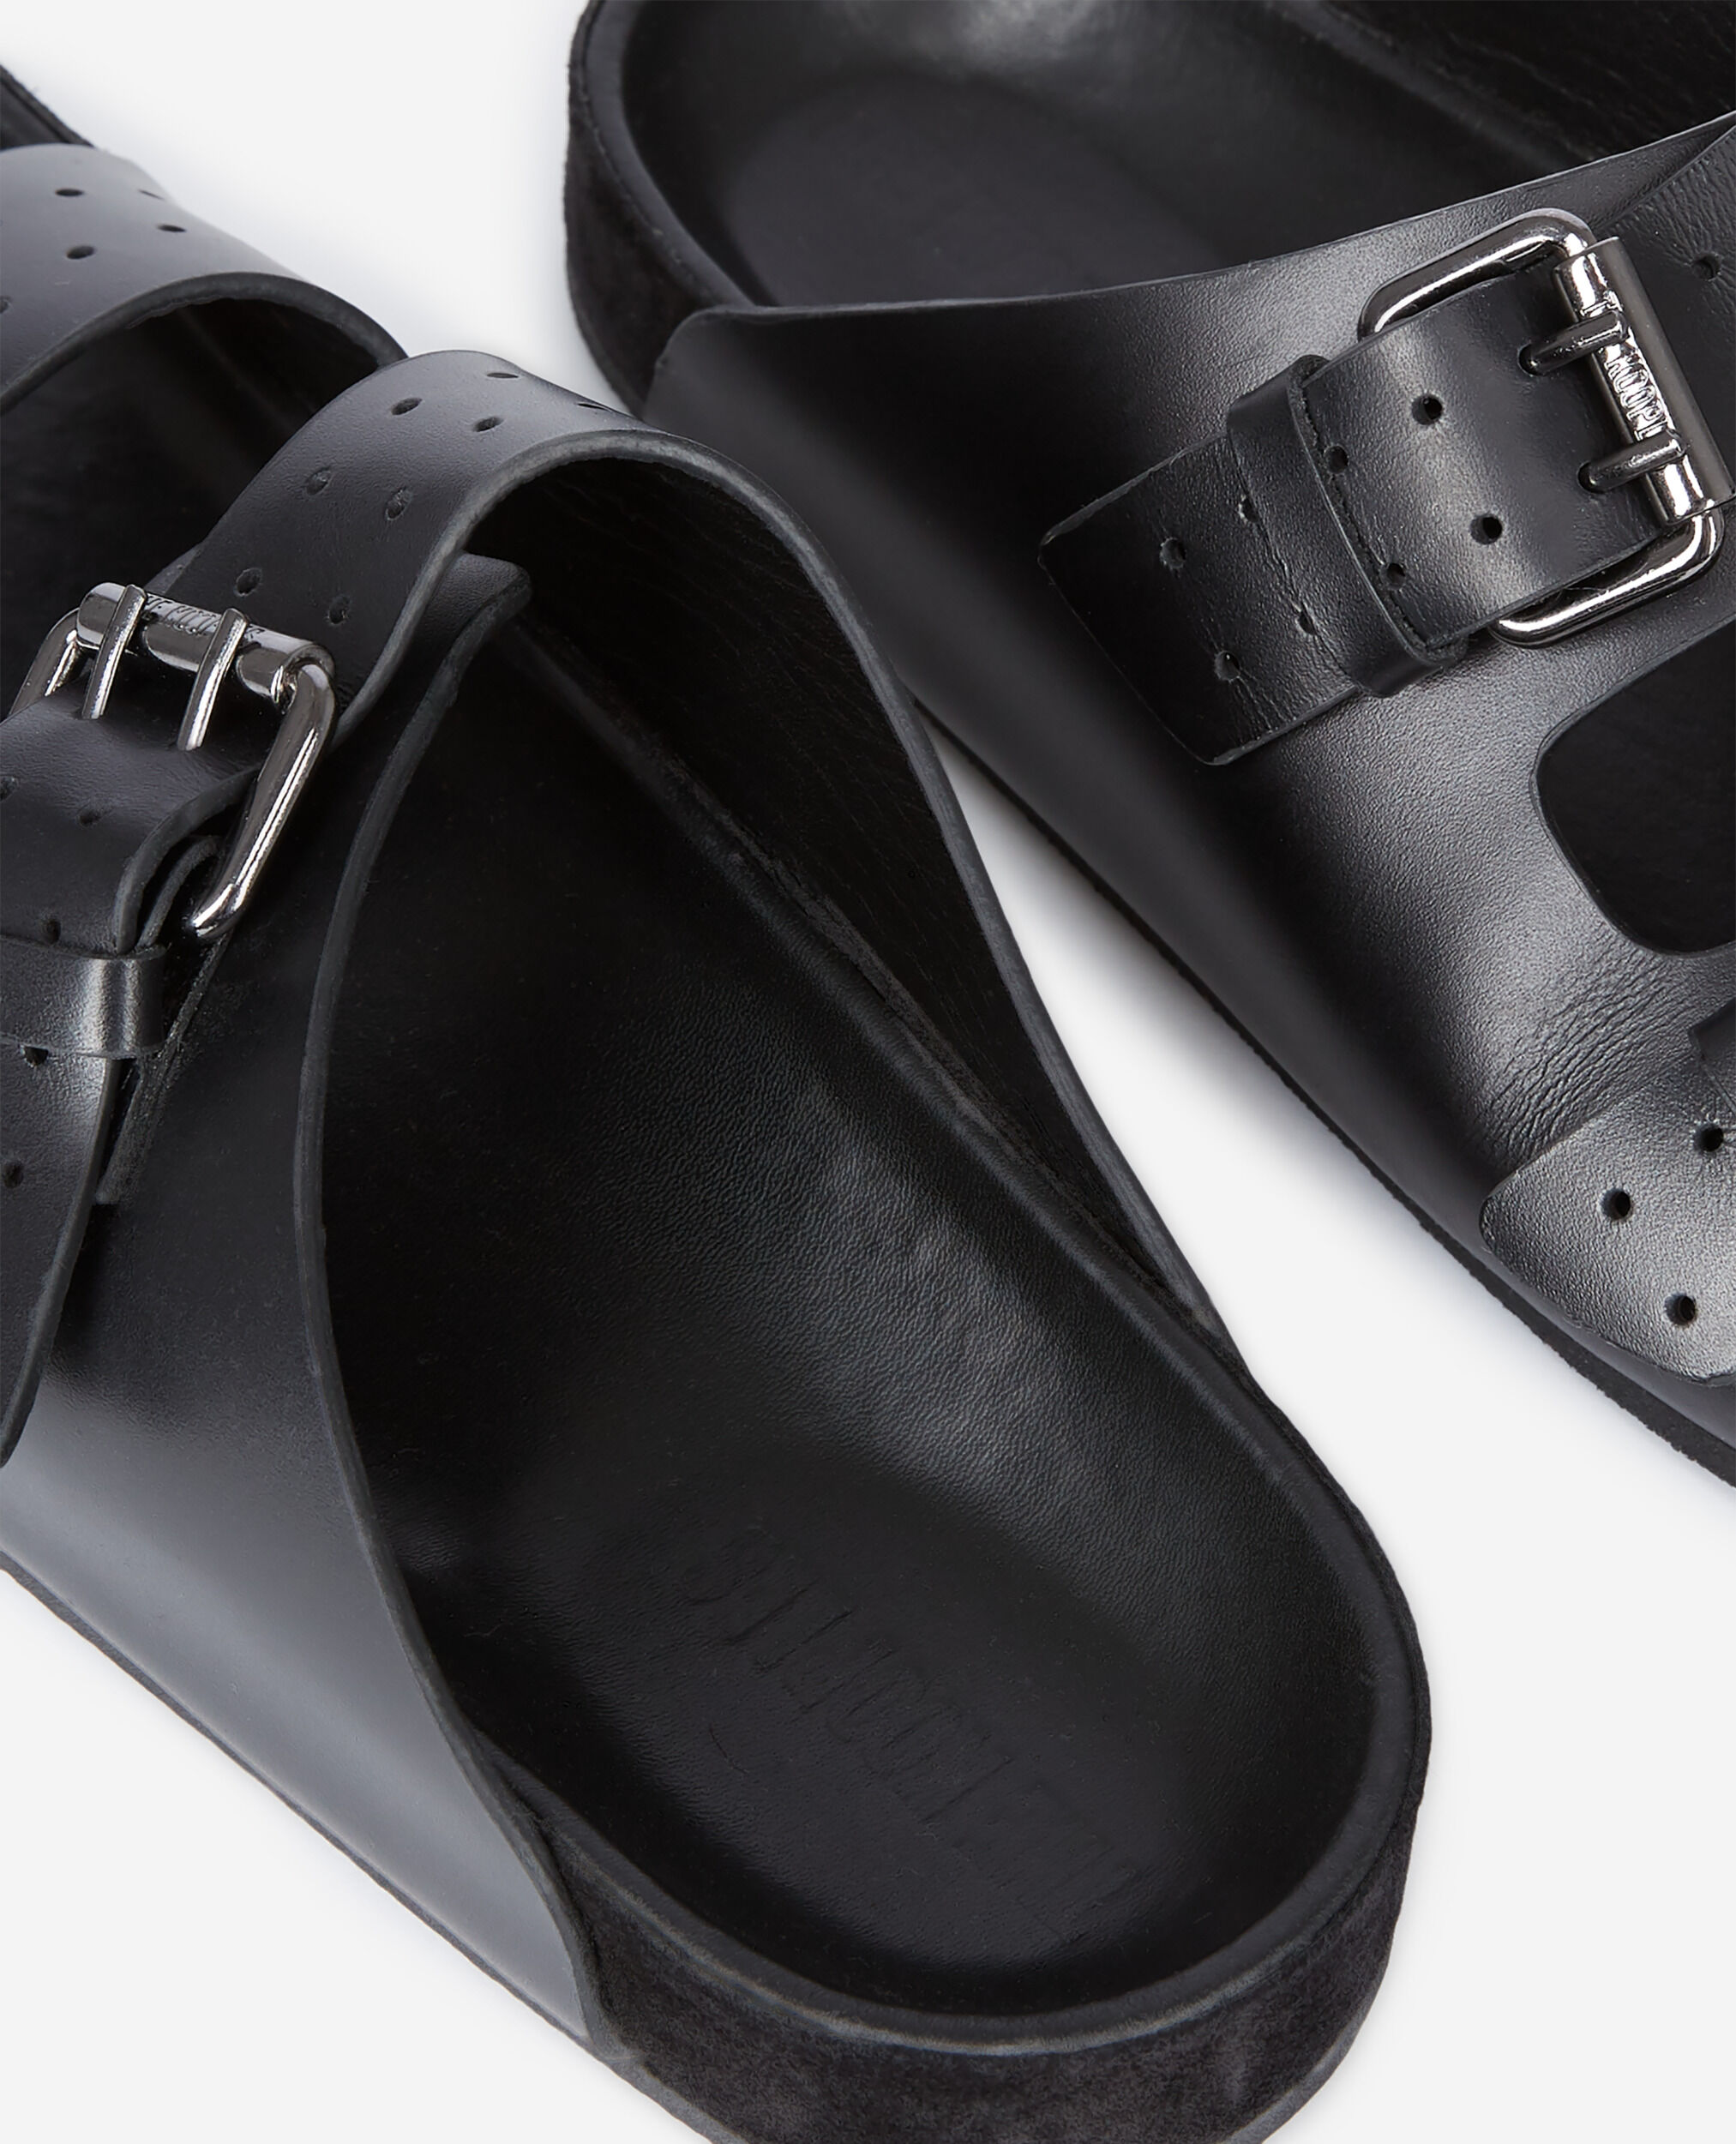 Sandales en cuir noir, BLACK, hi-res image number null